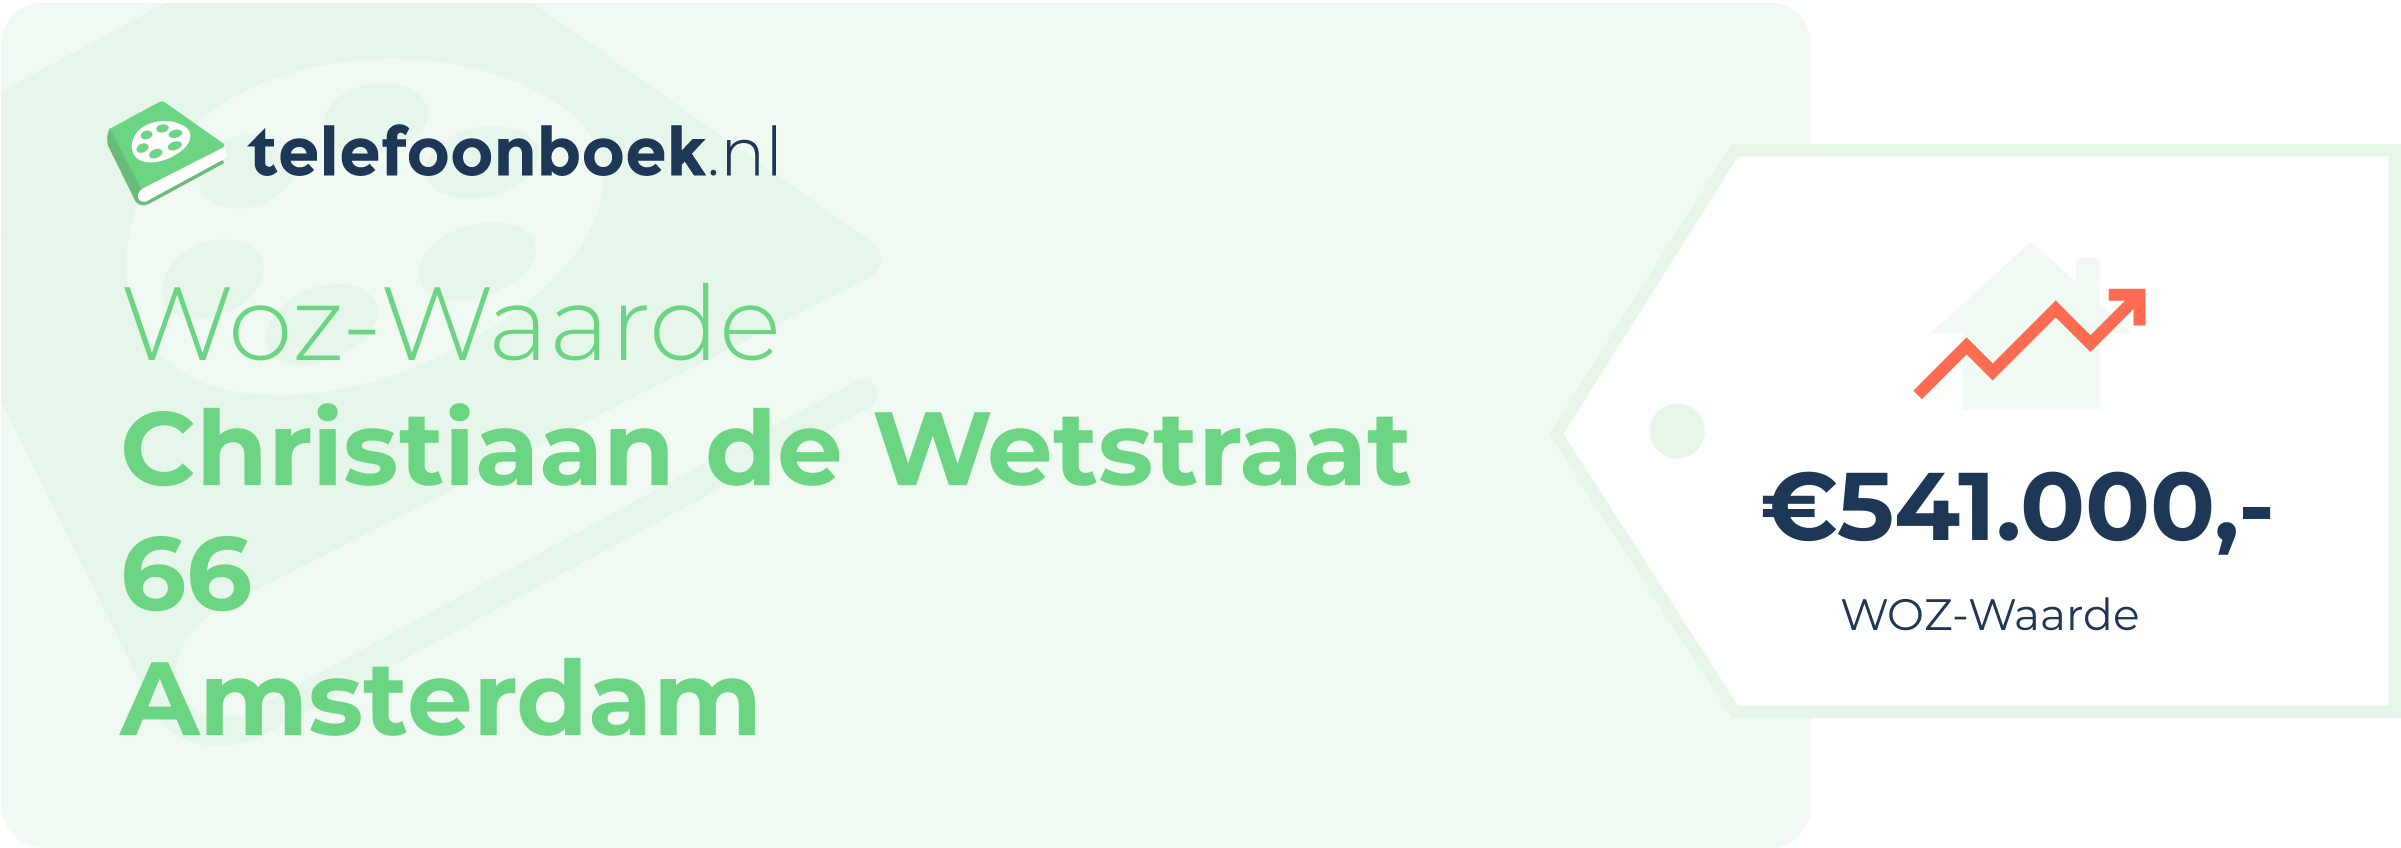 WOZ-waarde Christiaan De Wetstraat 66 Amsterdam